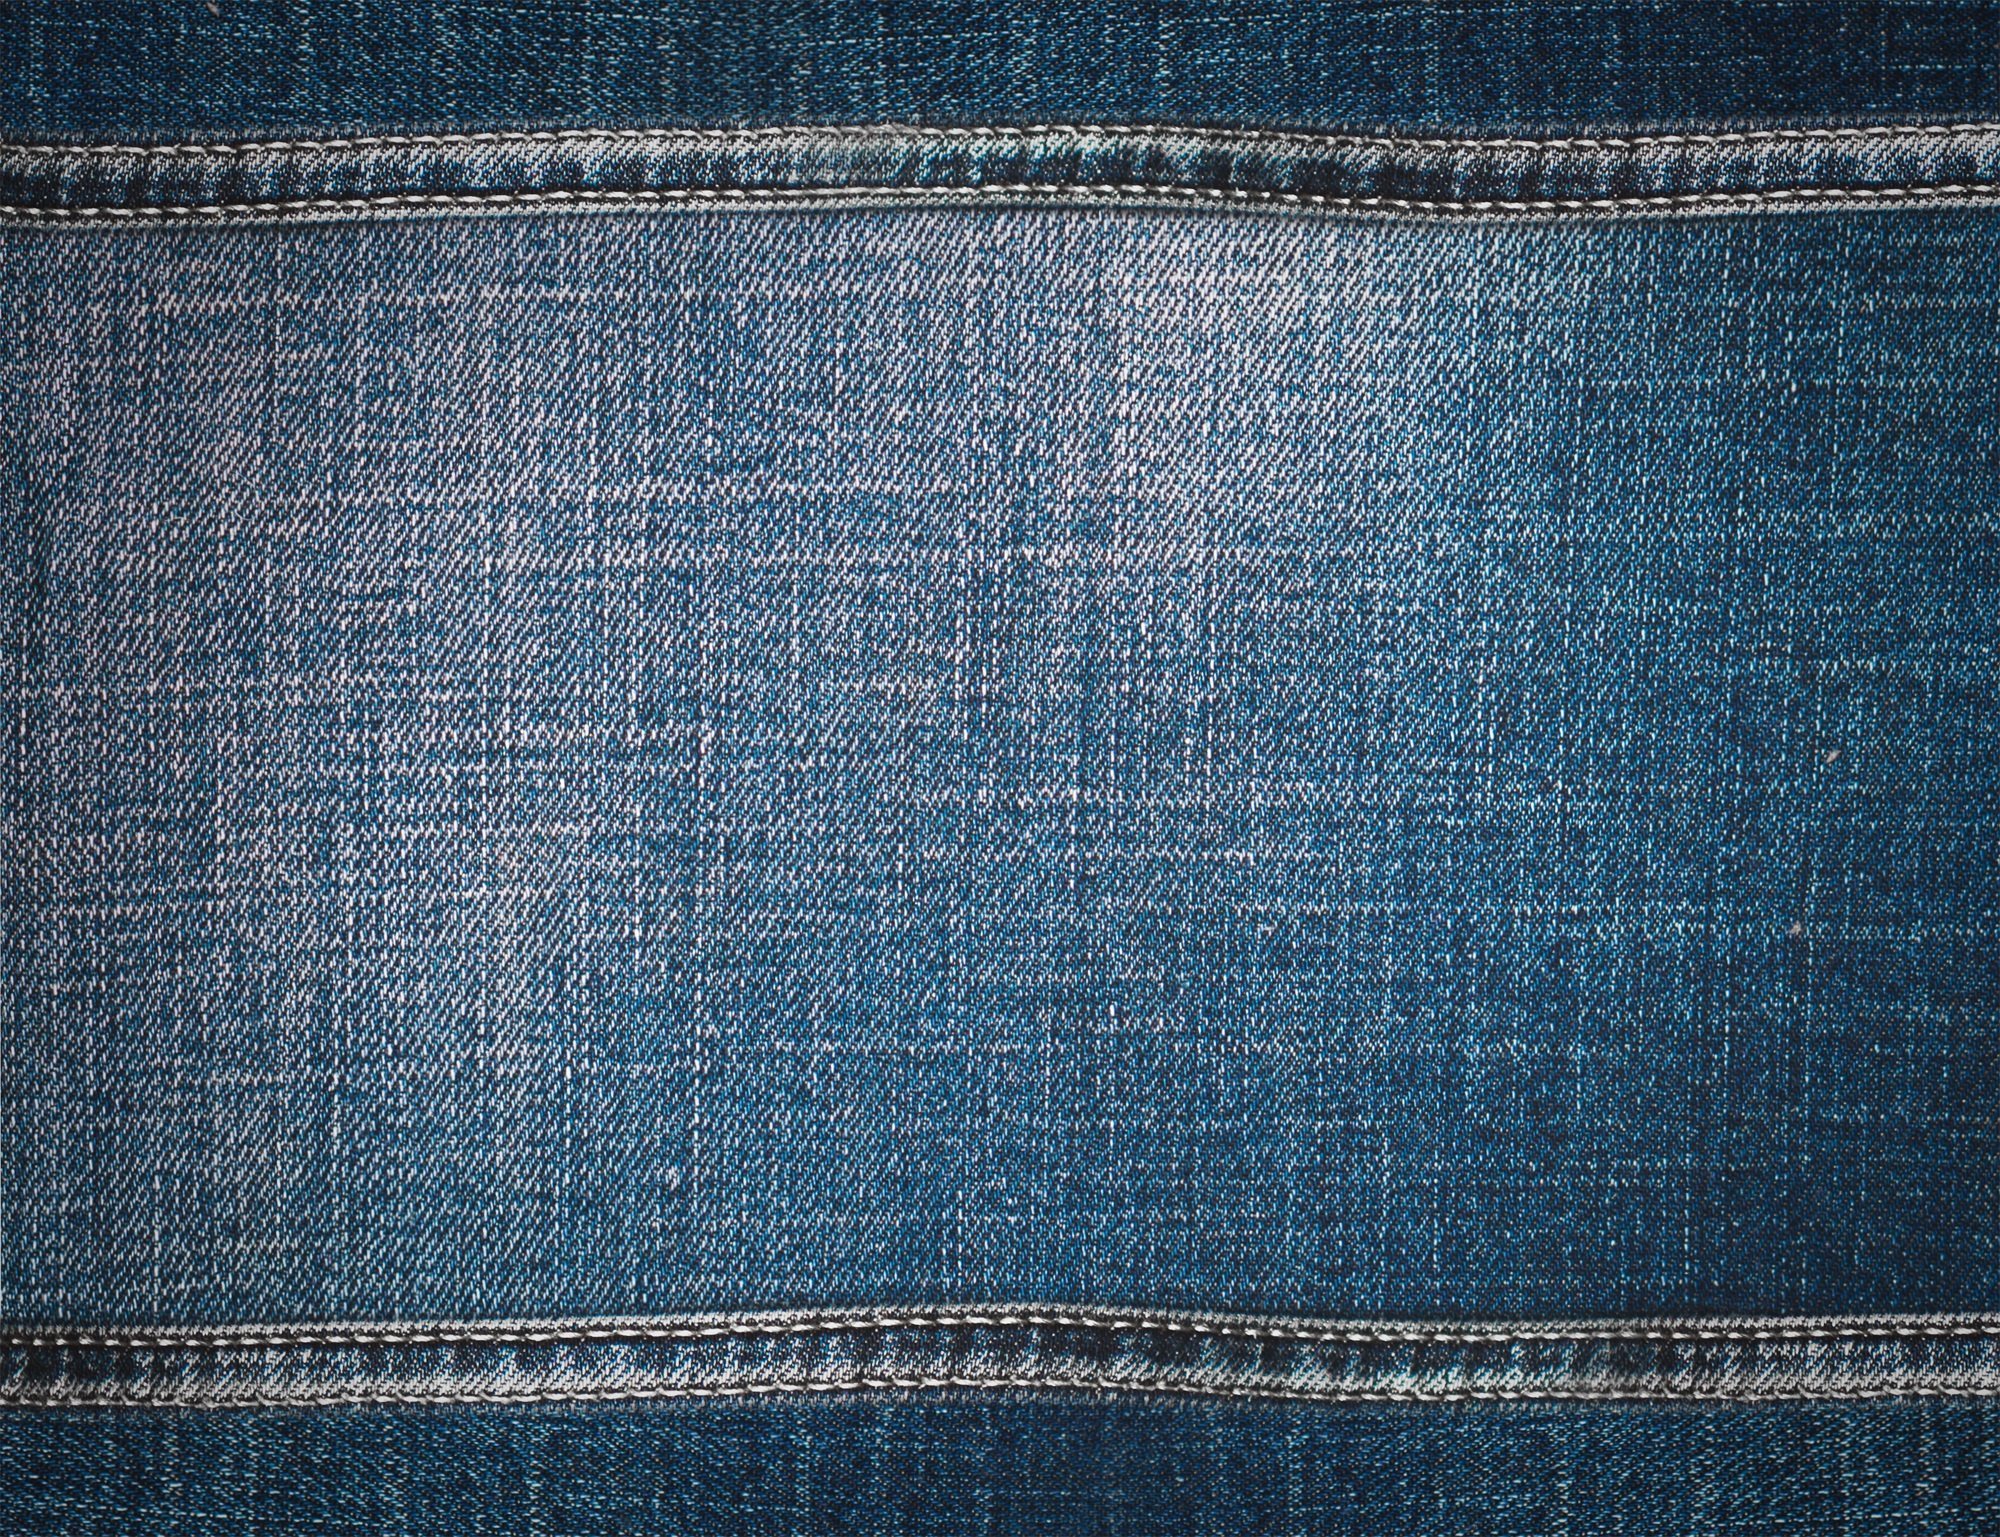 Текстура джинсов. Джинсовая ткань. Джинсовый фон. Фактура джинсовой ткани. Джинсы ткань.